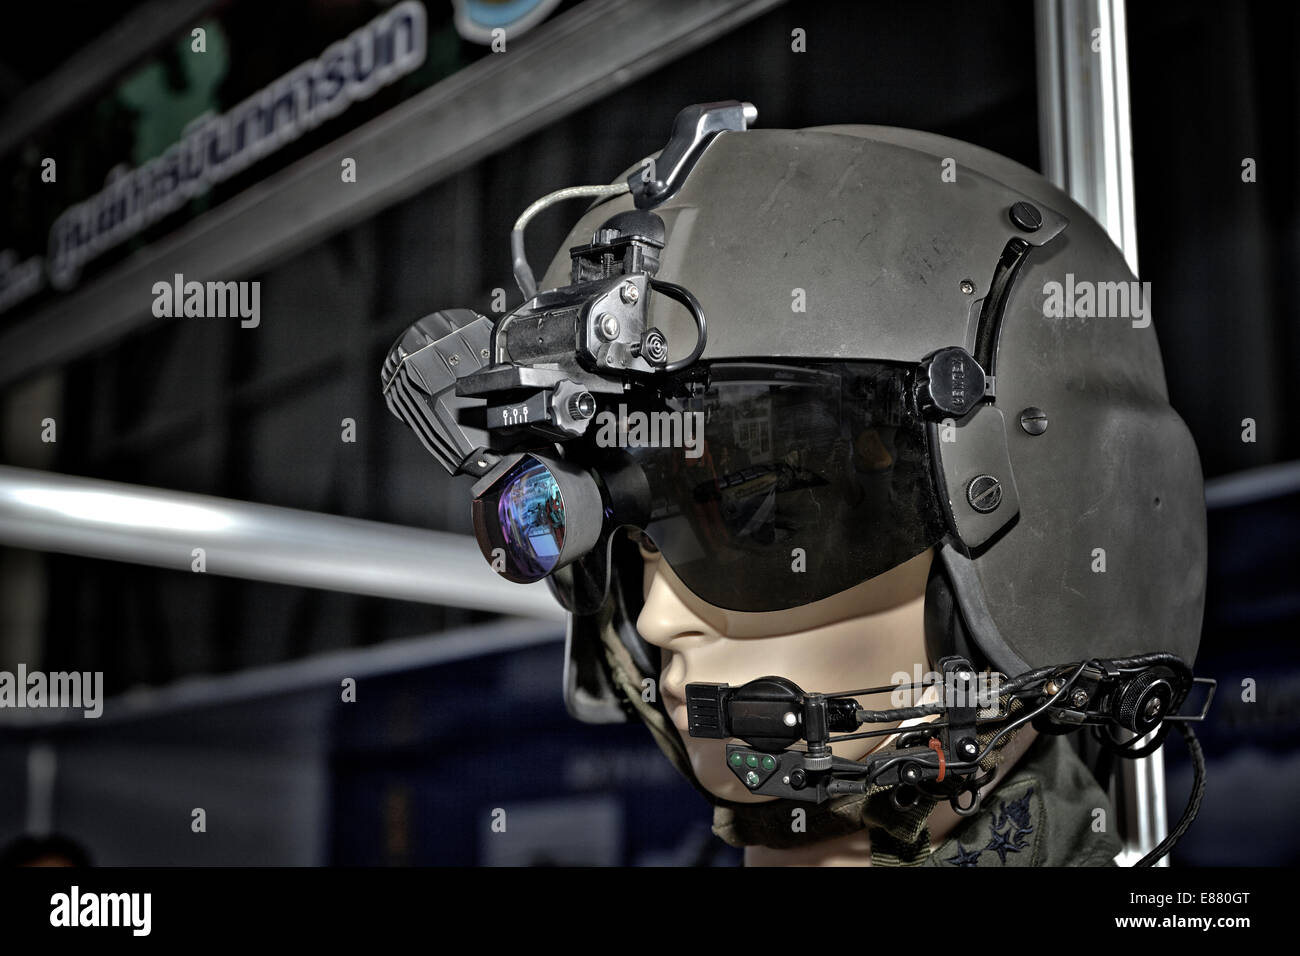 Tres empresas suministrarán equipos de visión nocturna al Ejército